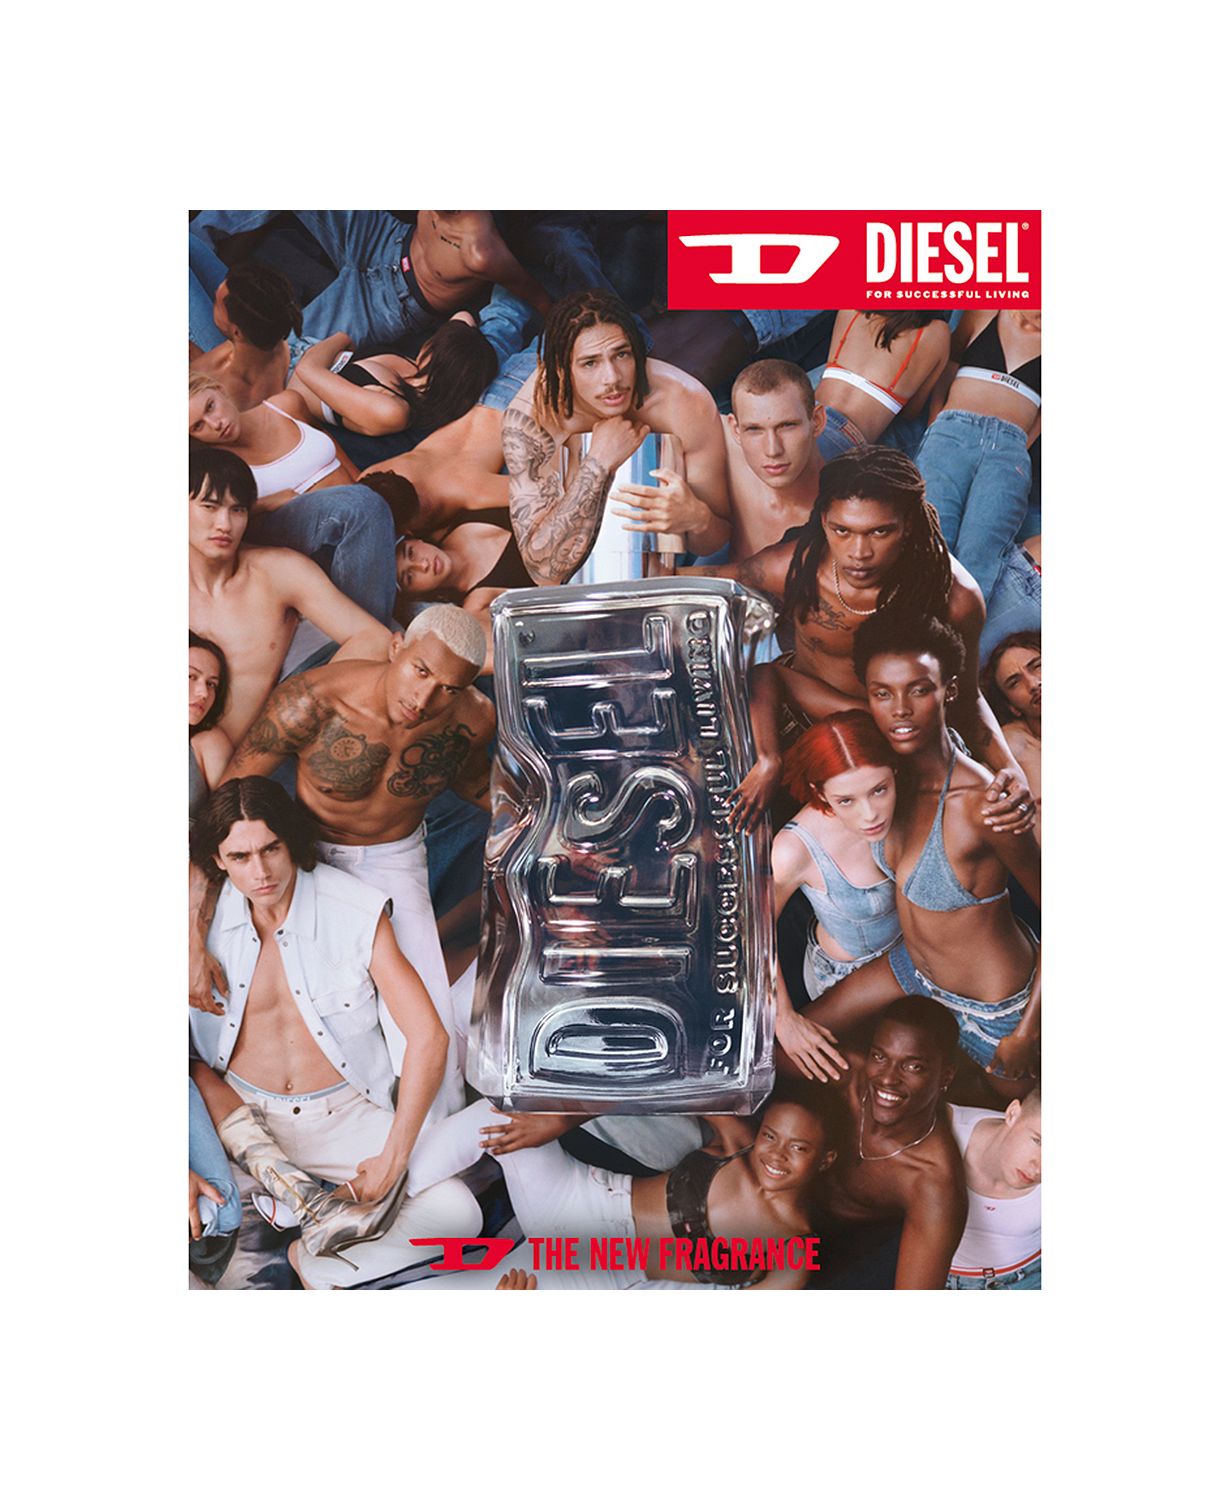 Diesel D by Diesel Eau de Toilette Spray, 1.7 oz.